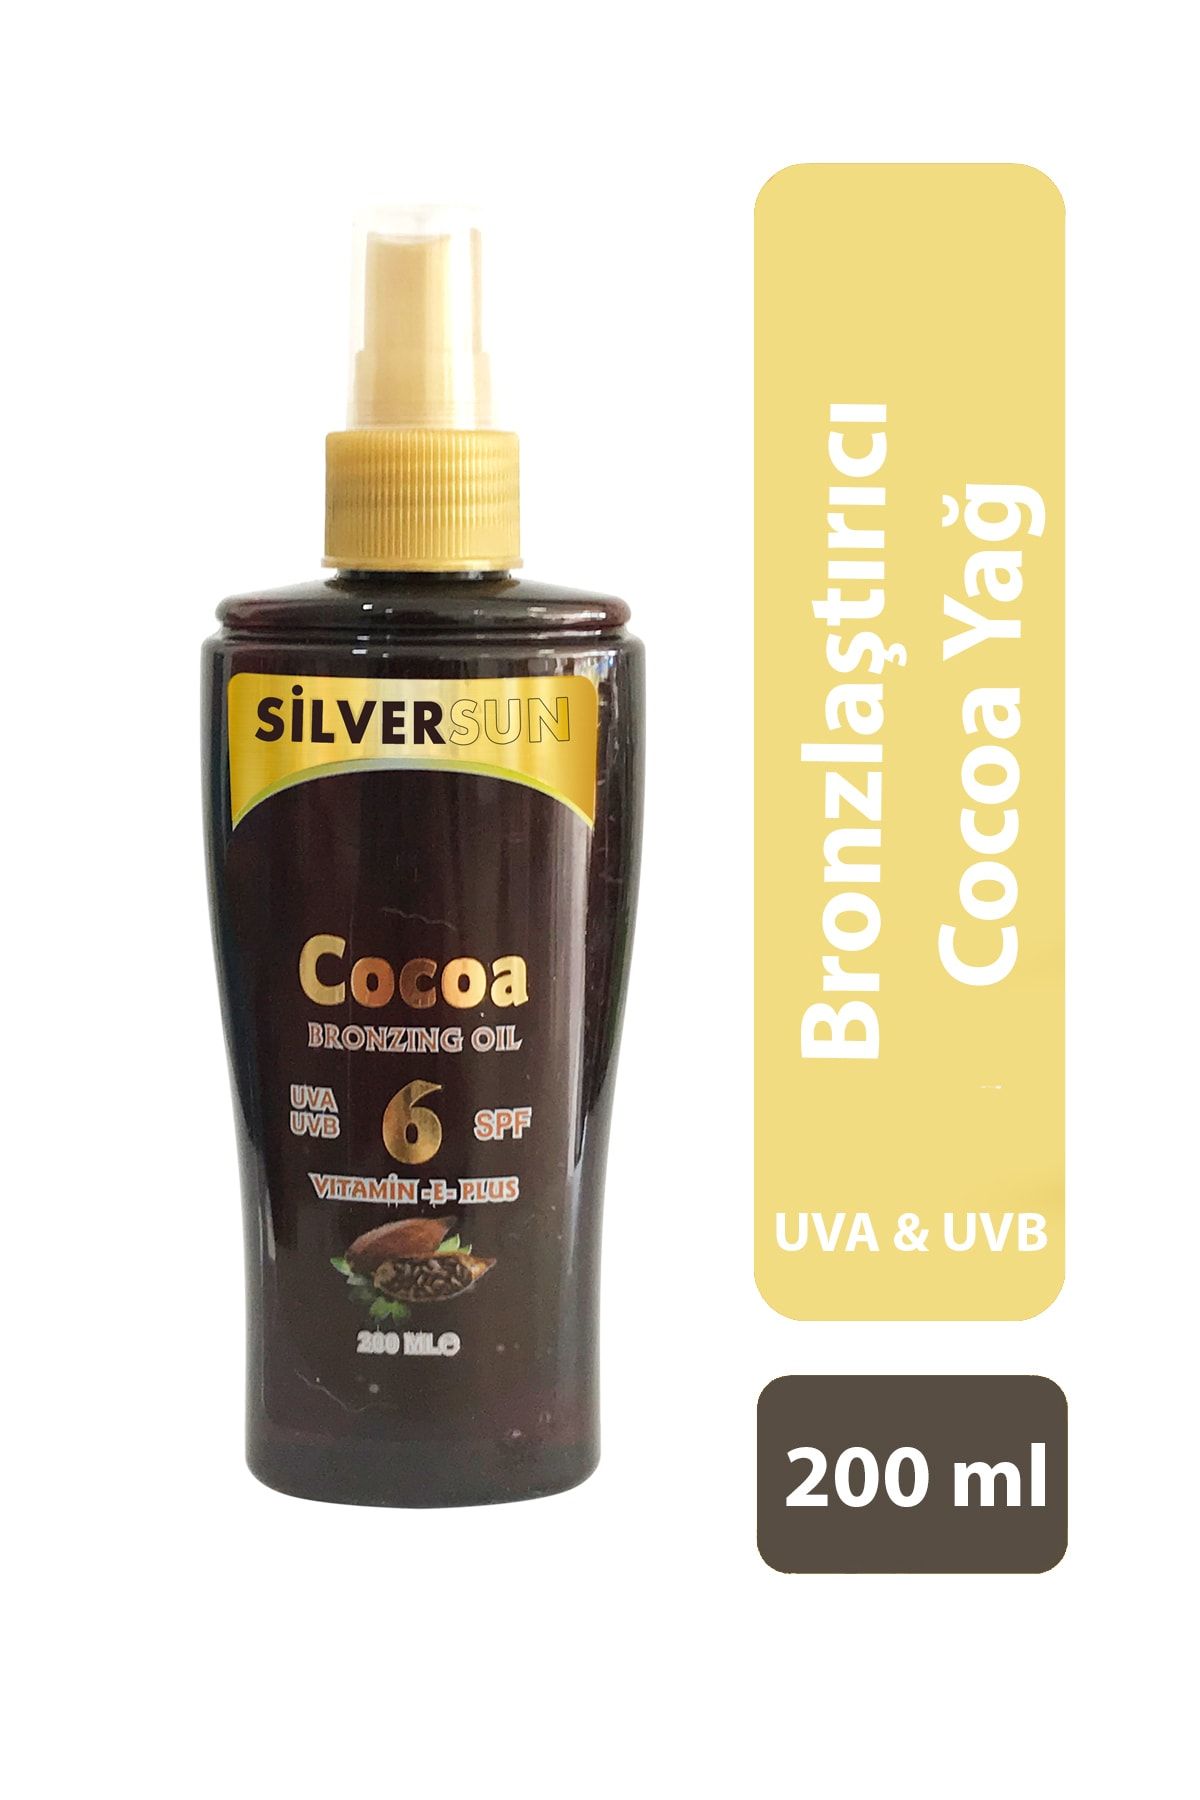 Silversun Silversun Cocoa Bronzlaştırıcı Yağ Vitamin E Plus Spf 6 200 ml